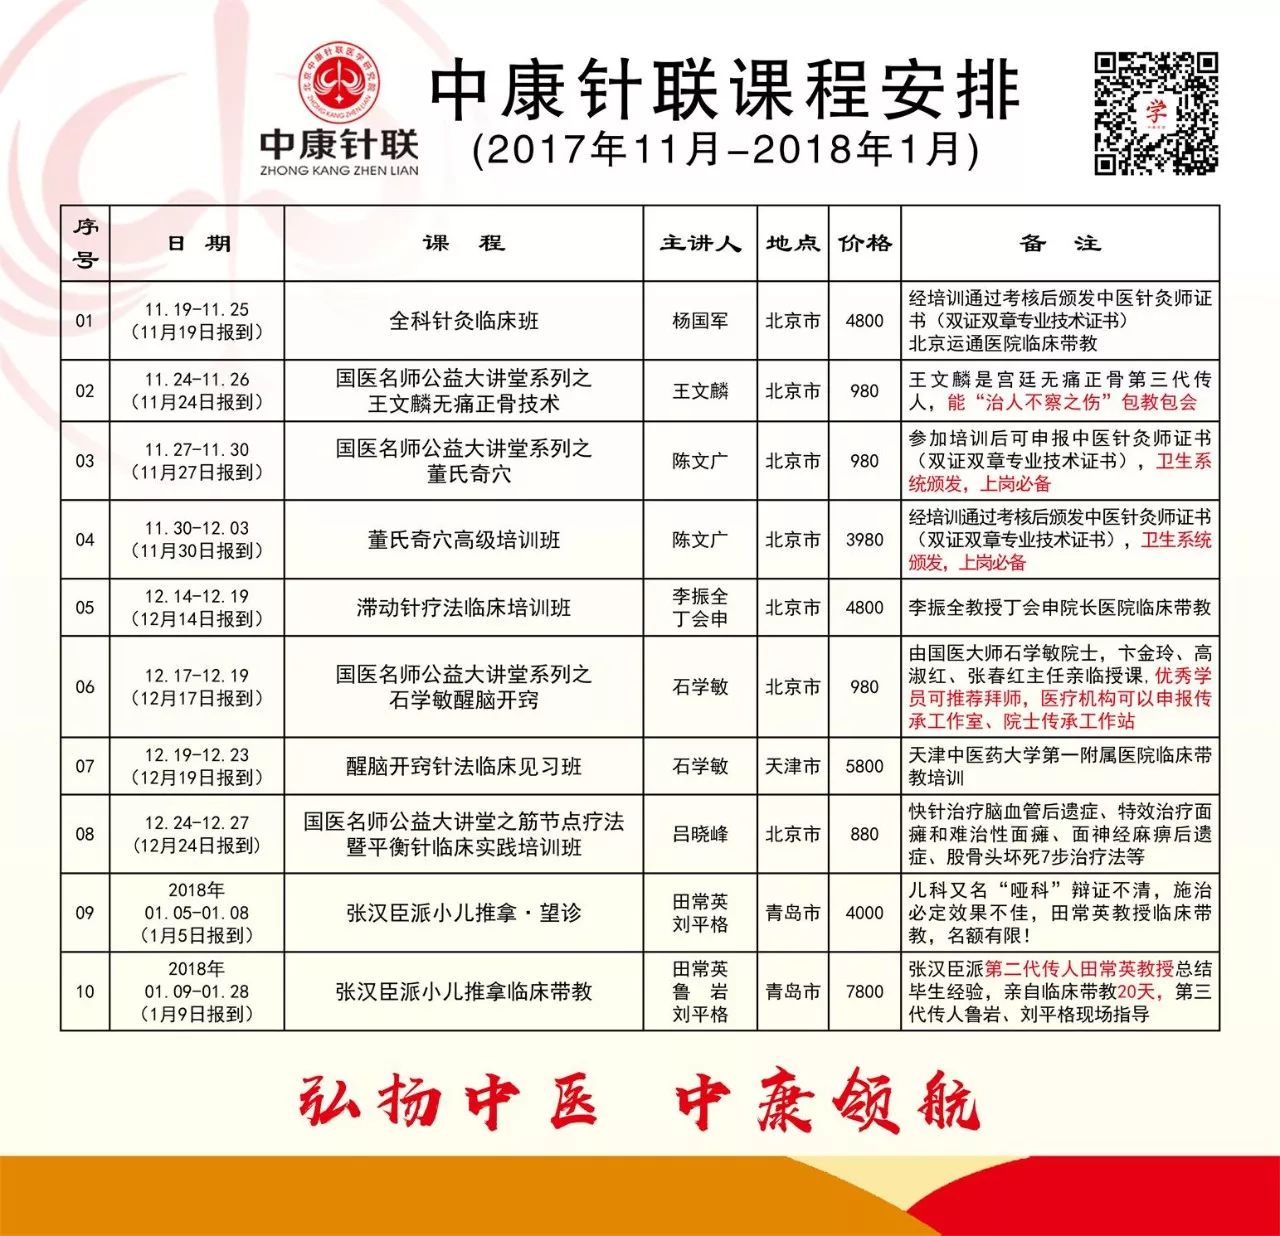 北京市卫生和计划生育委员会 北京市中医管理局 关于开展医疗美容主诊医师专业备案管理工作的通知